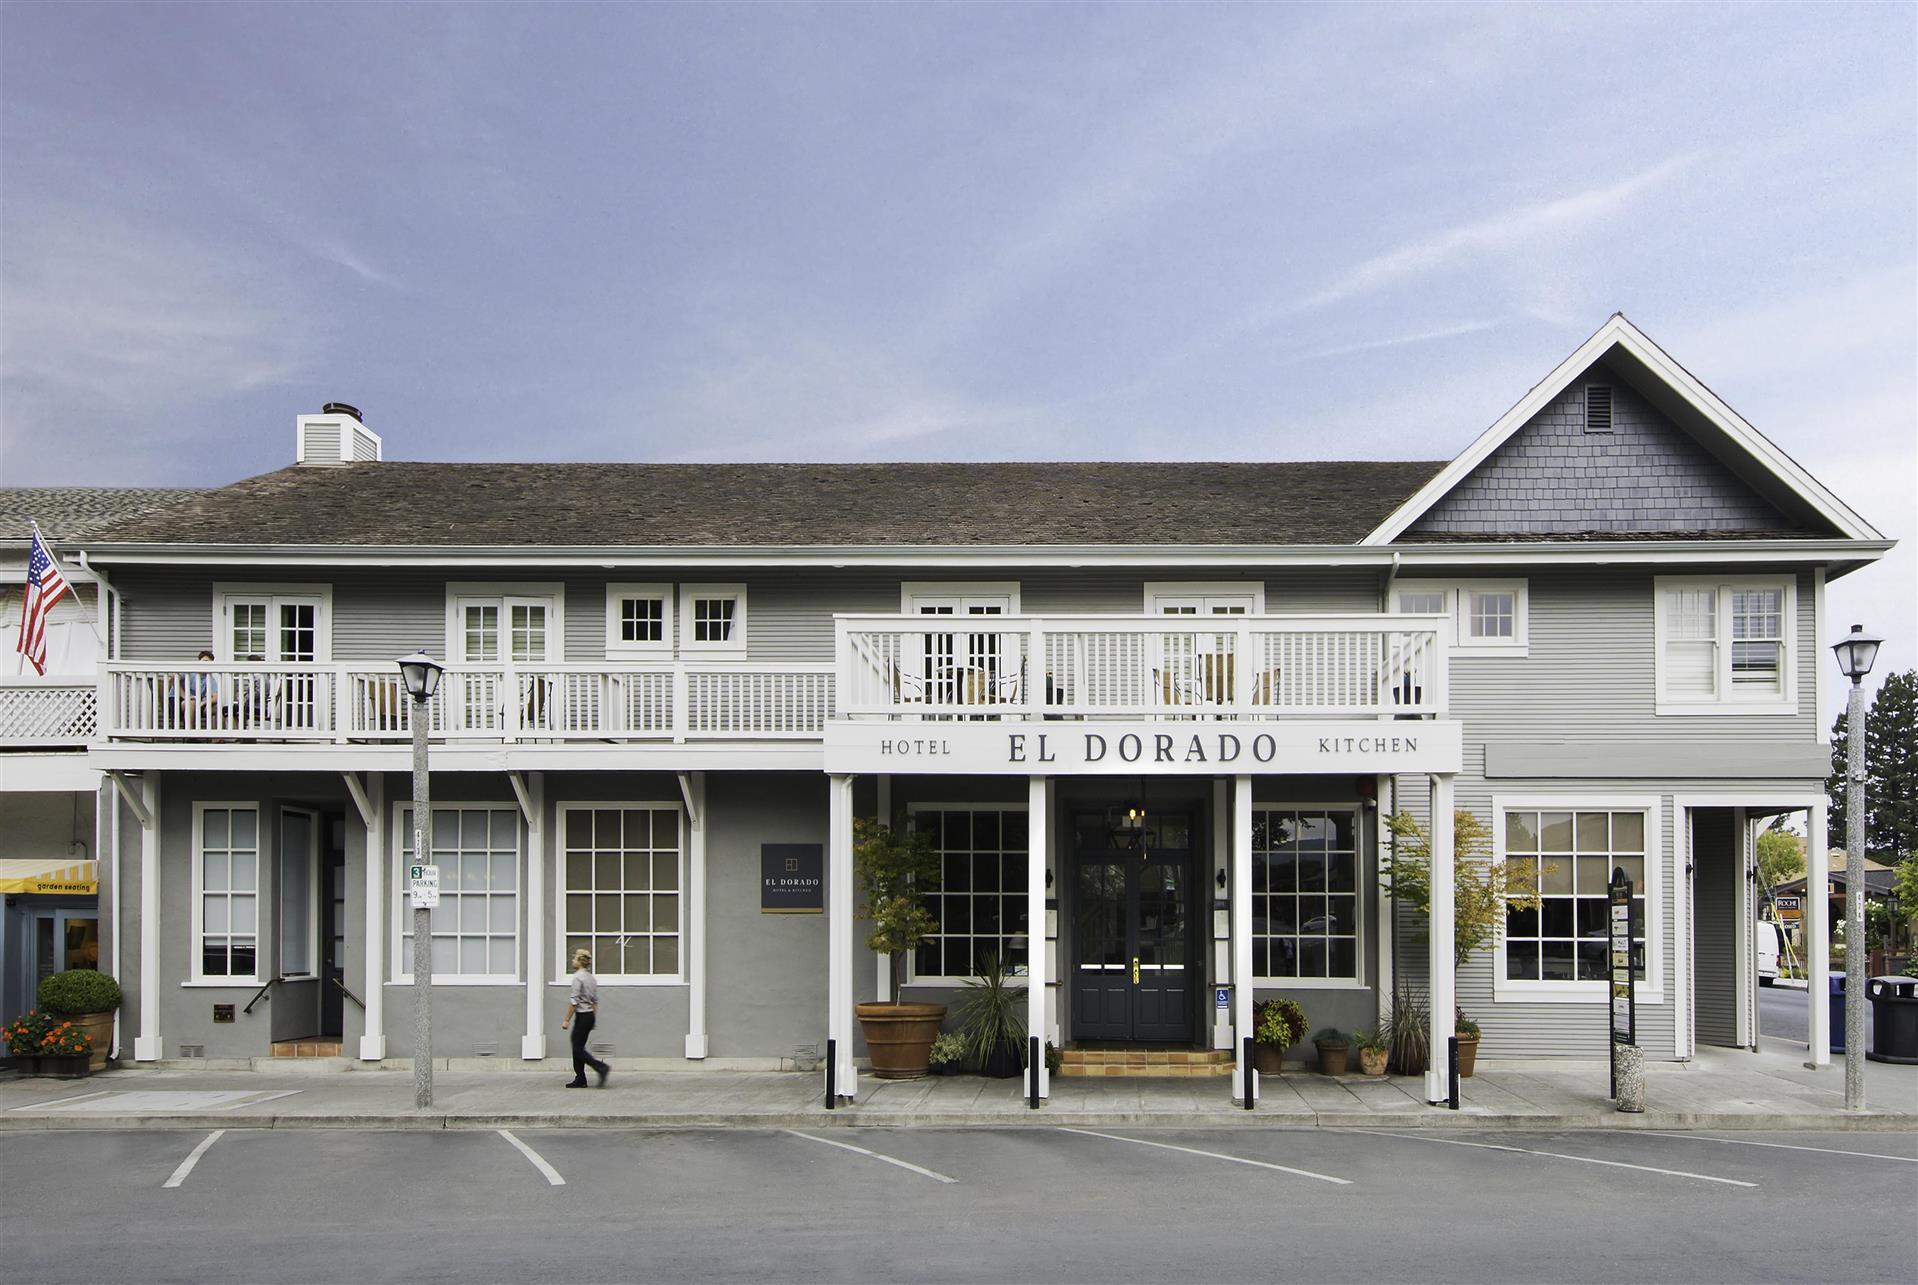 El Dorado Hotel & Kitchen in Sonoma, CA